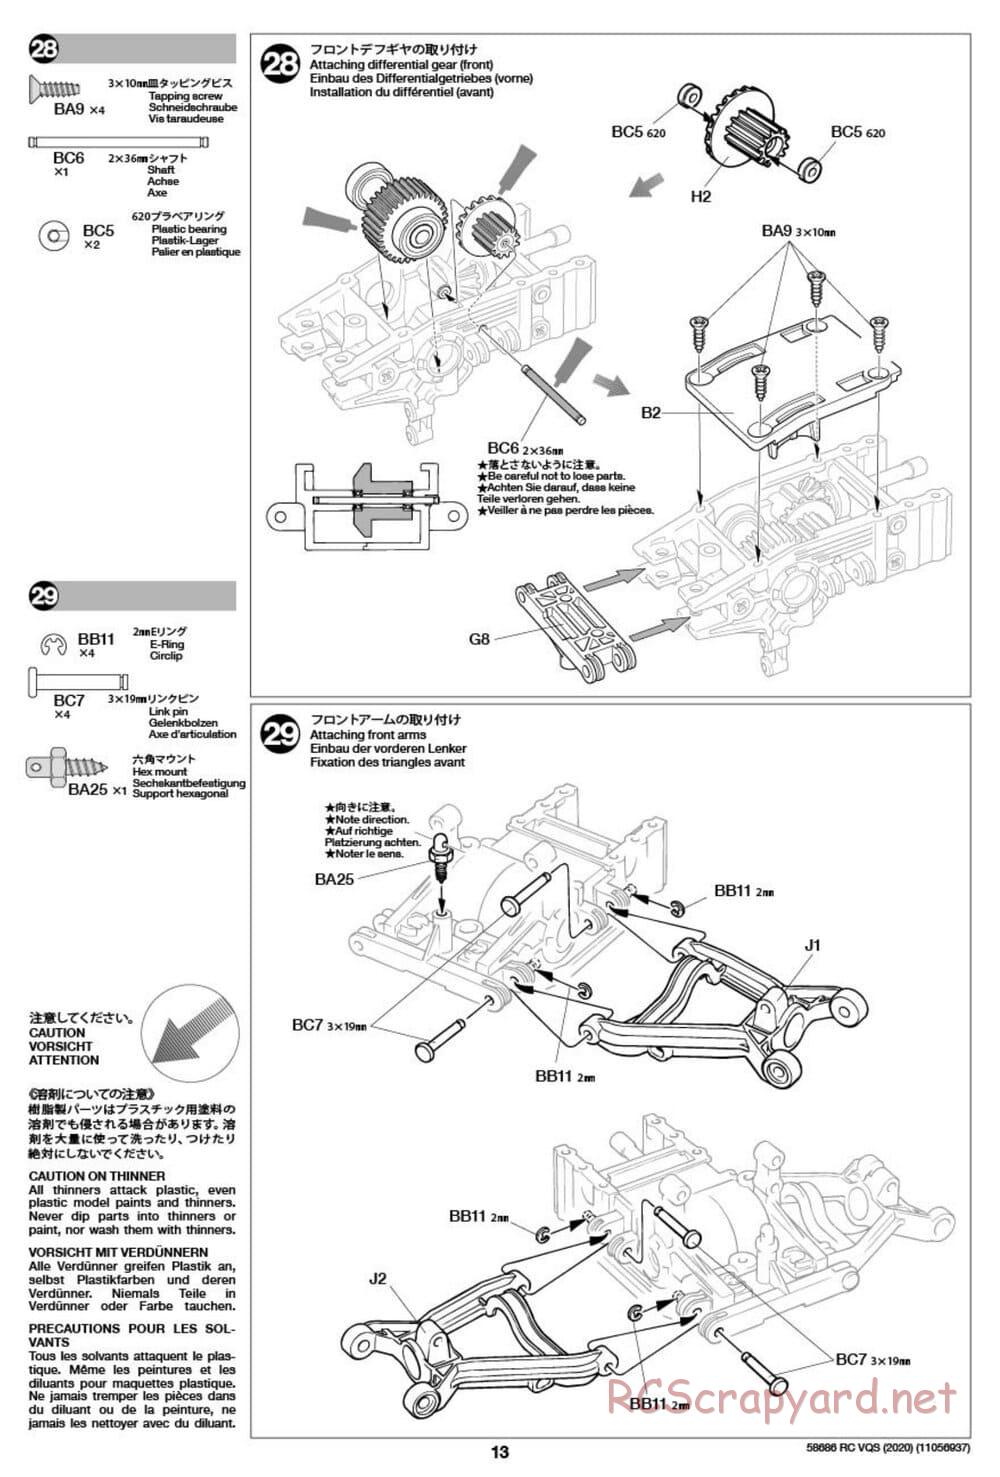 Tamiya - VQS (2020) - AV Chassis - Manual - Page 13